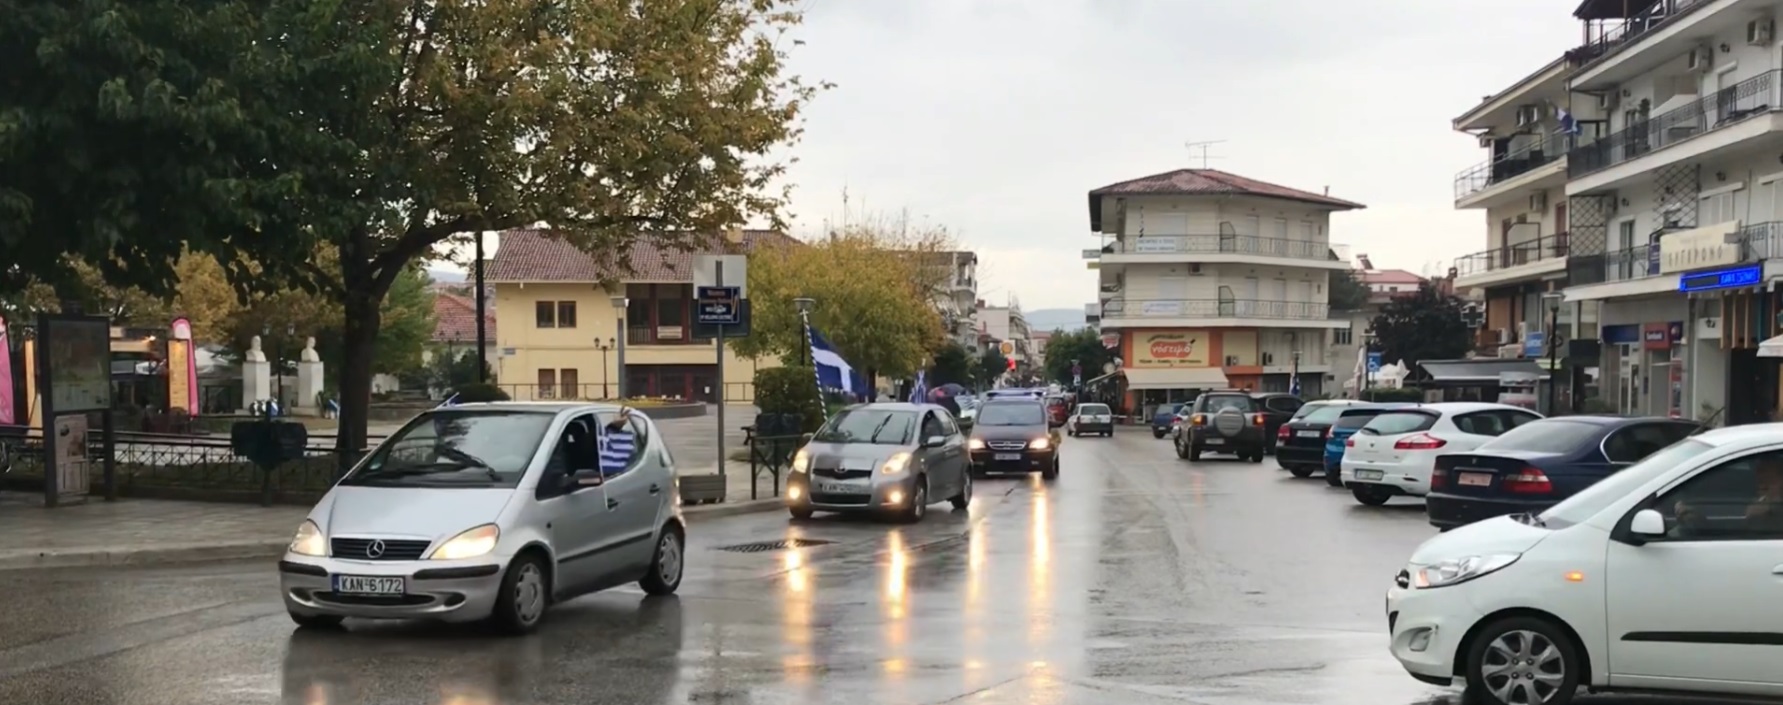 28η Οκτωβρίου: Στην Καλαμπάκα έβαλαν ελληνικές σημαίες στα αυτοκίνητα τους και παρέλασαν (βίντεο)